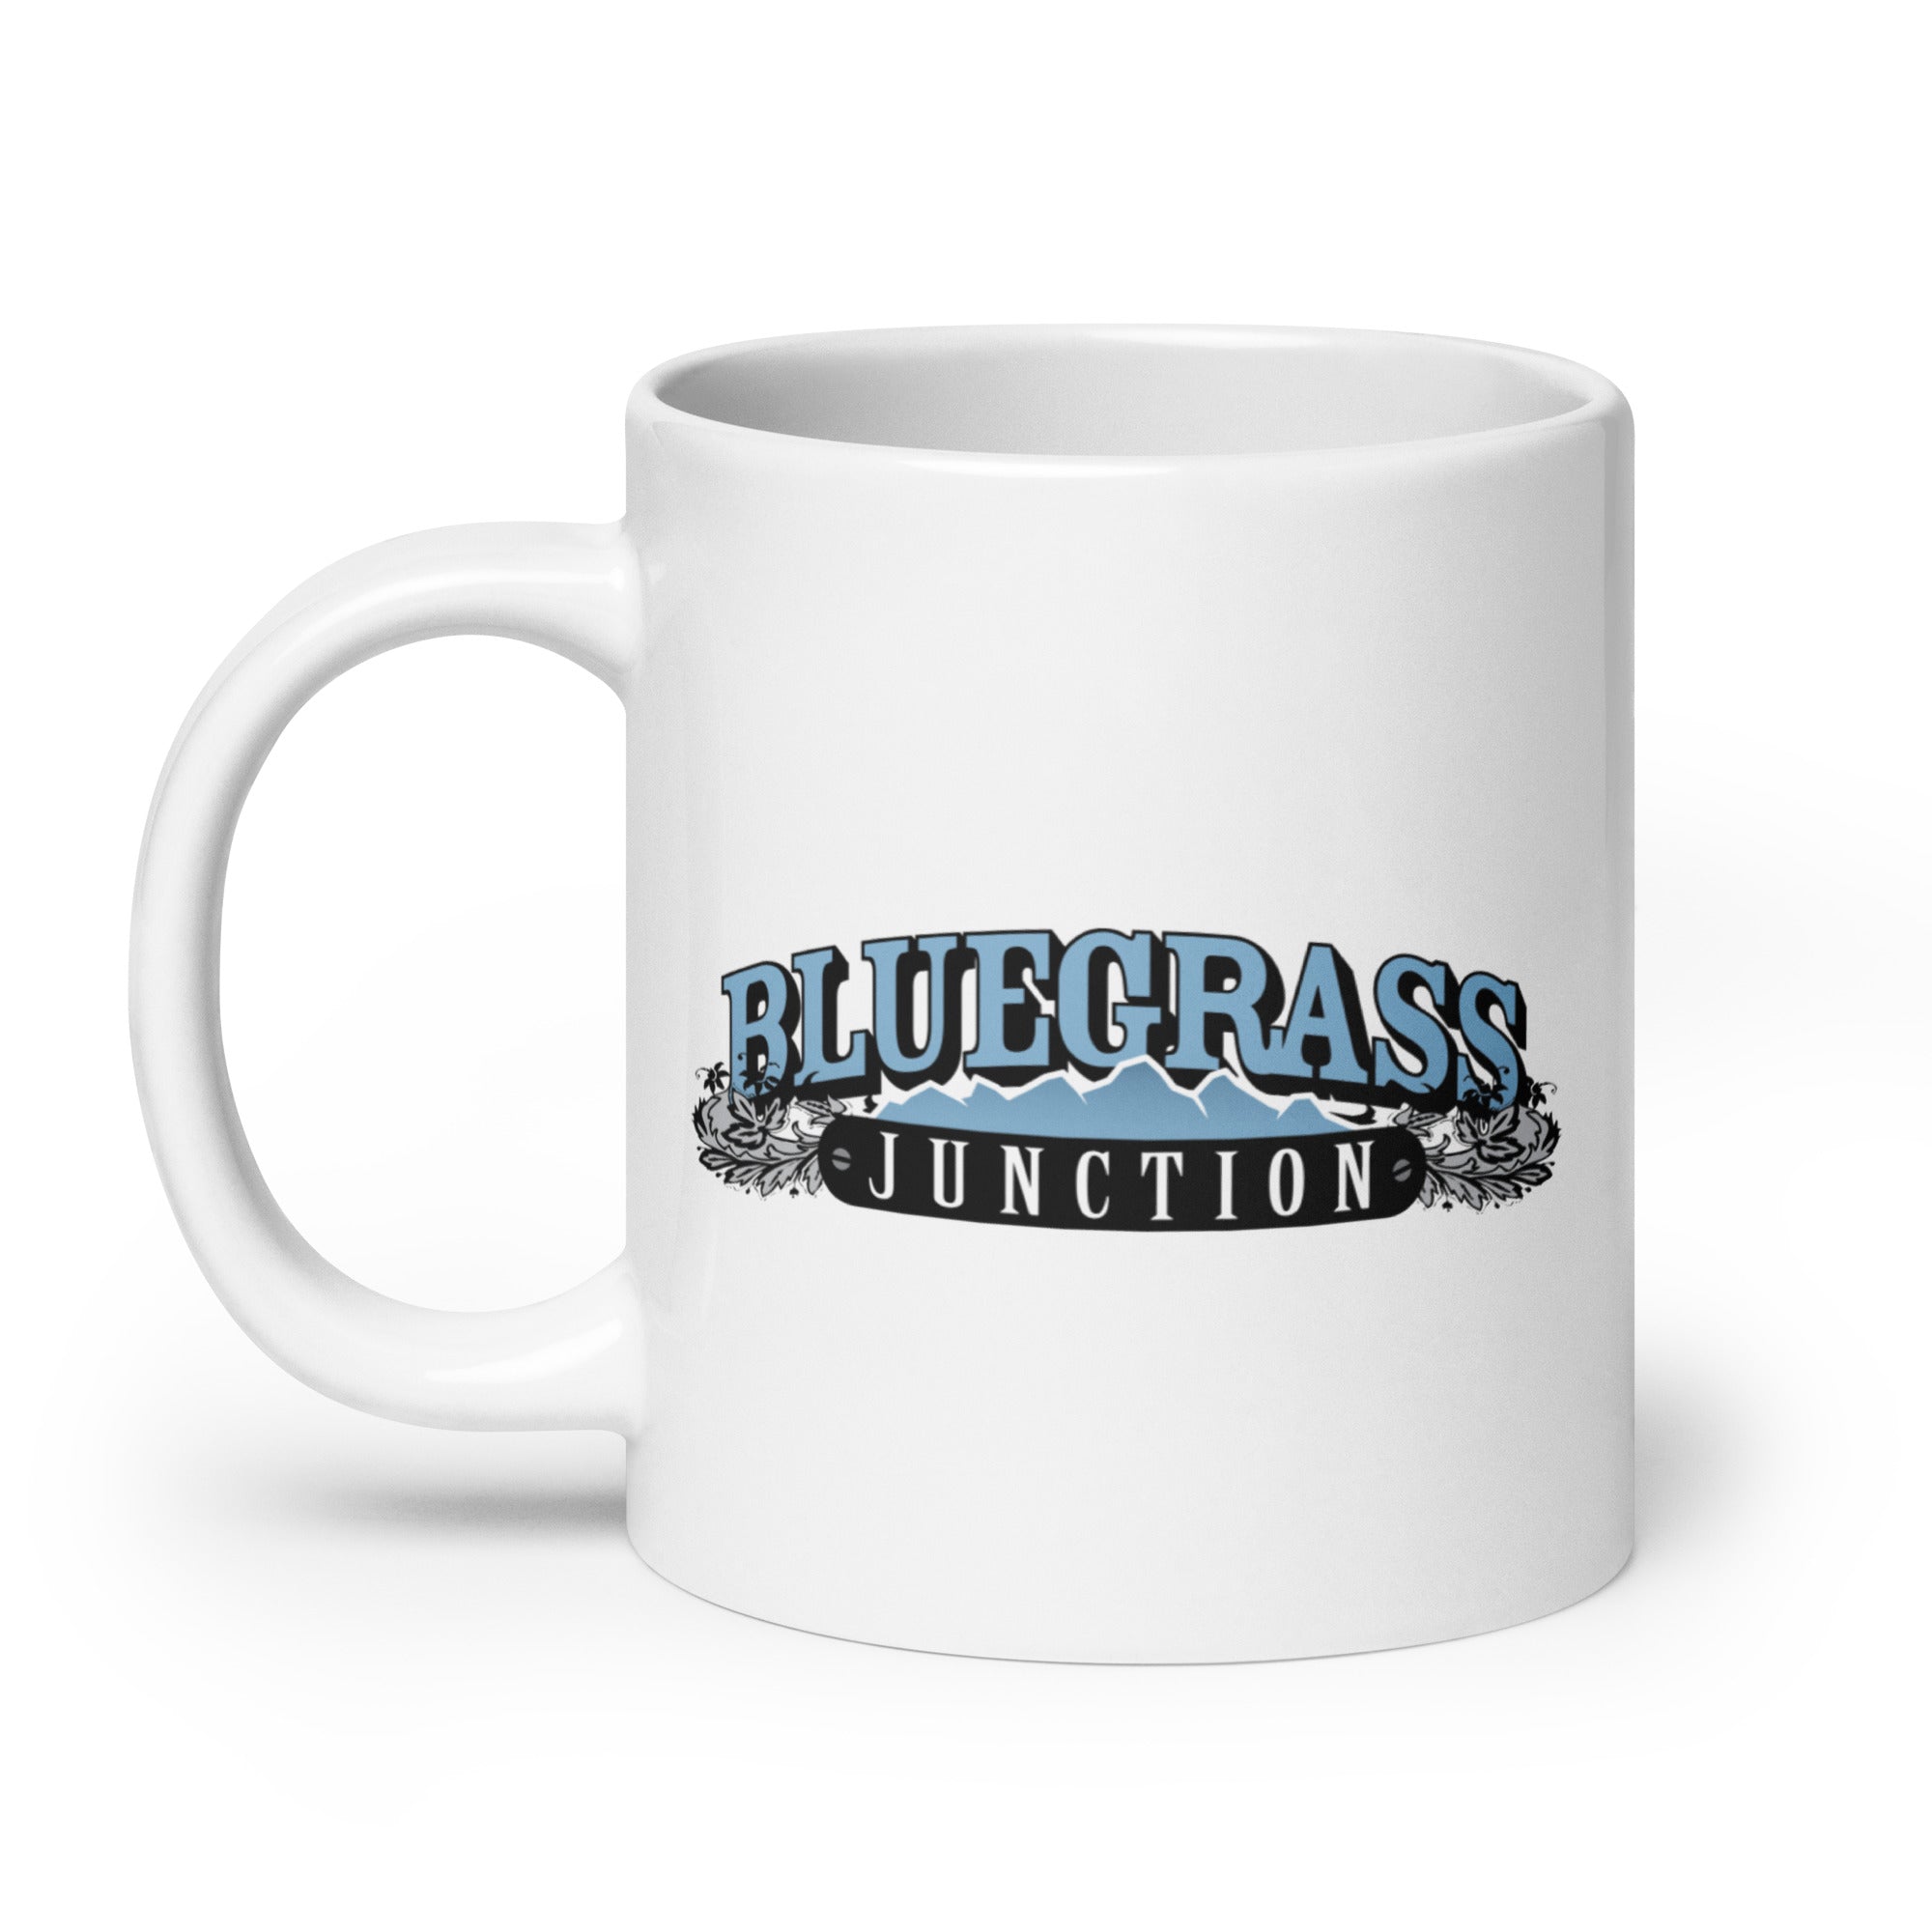 Bluegrass Junction: Mug